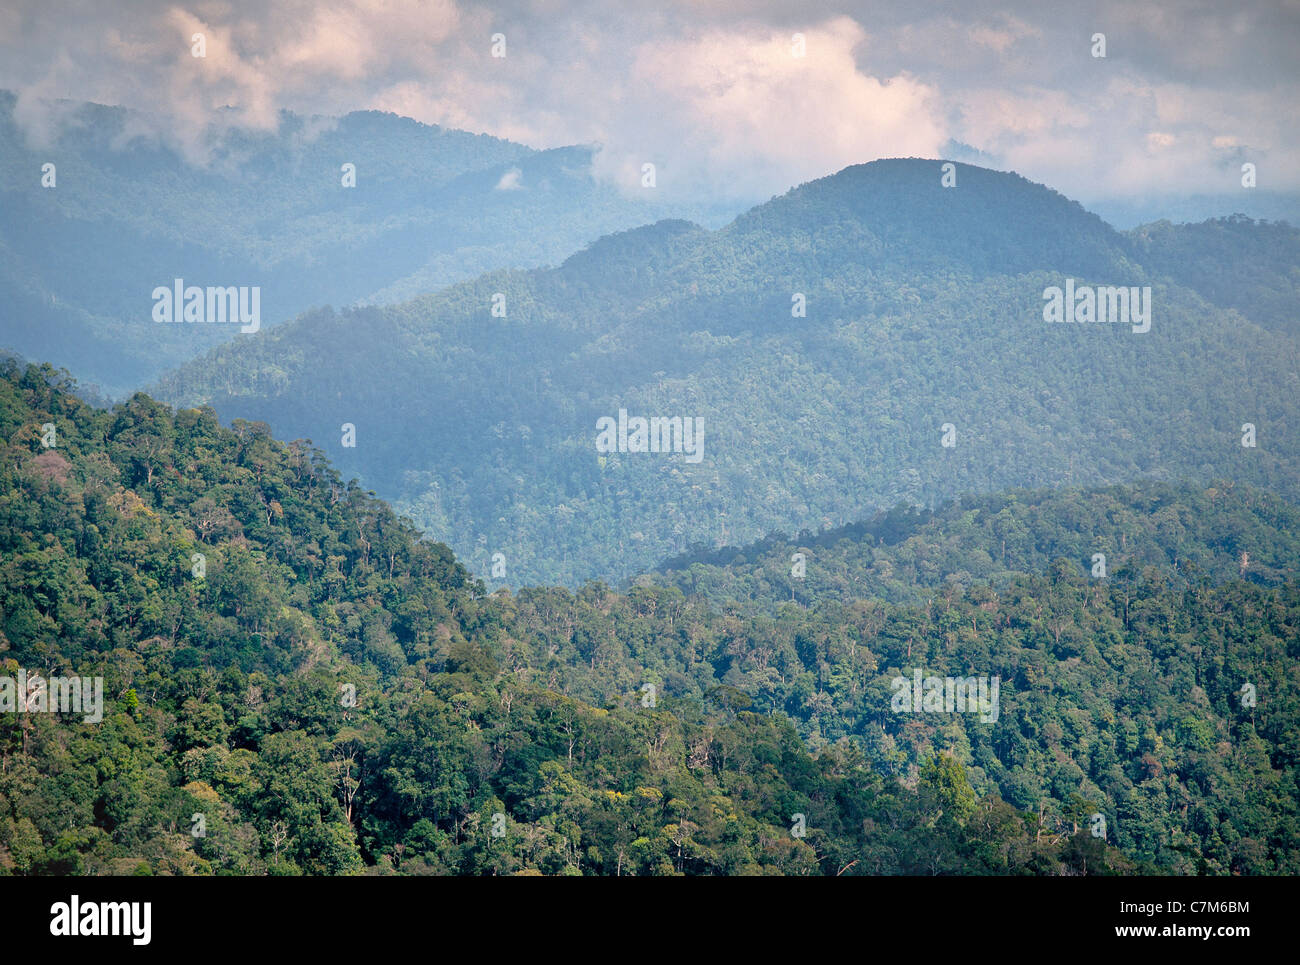 Jardins tropicaux boisés collines karstiques, Mulu National Park, Sarawak, Bornéo, Malaisie Orientale Banque D'Images